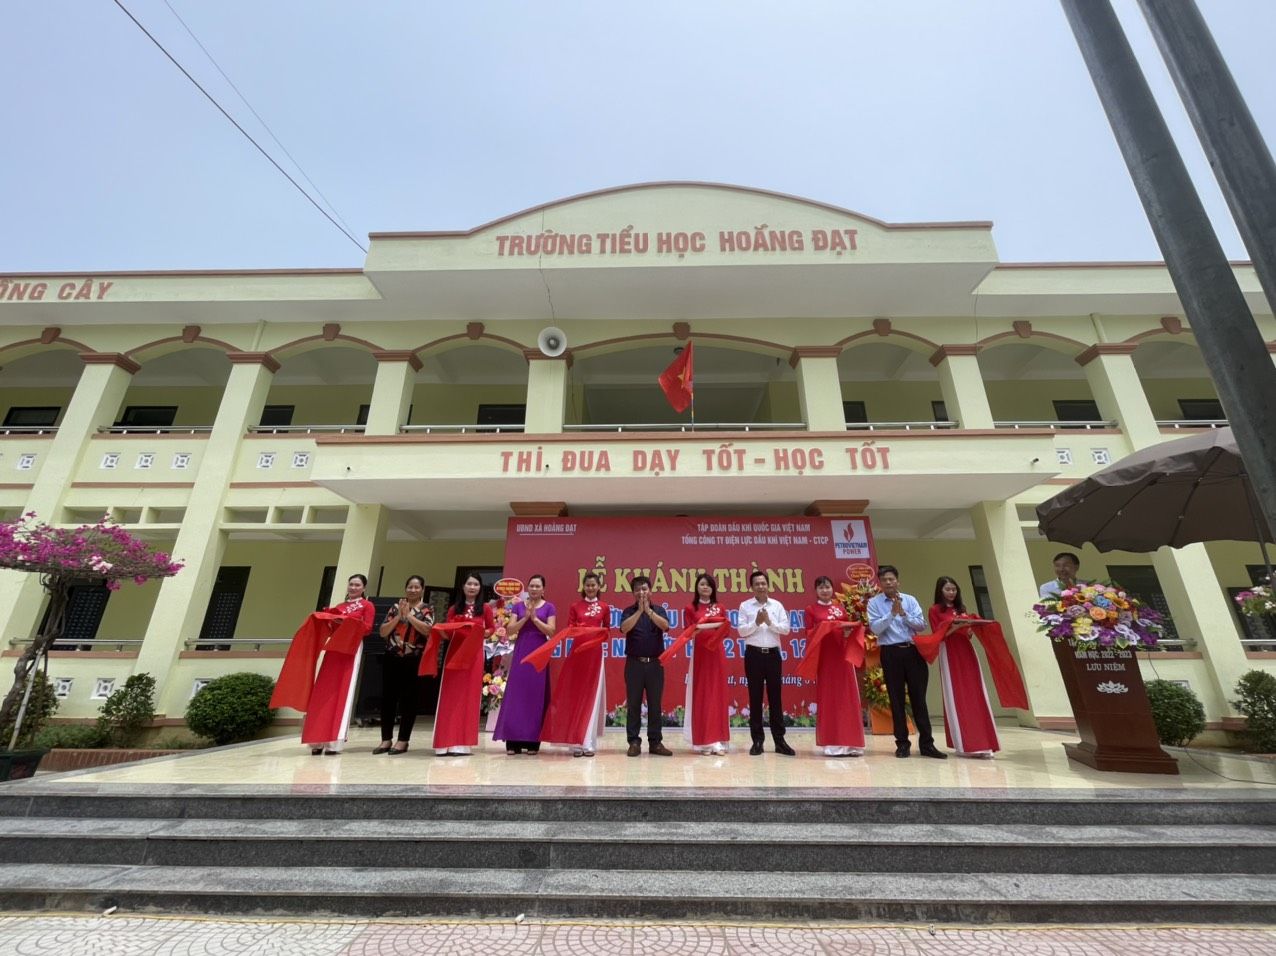 PV Power khánh thành công trình an sinh xã hội tại xã Hoằng Đạt, huyện Hoằng Hoá, tỉnh Thanh Hóa